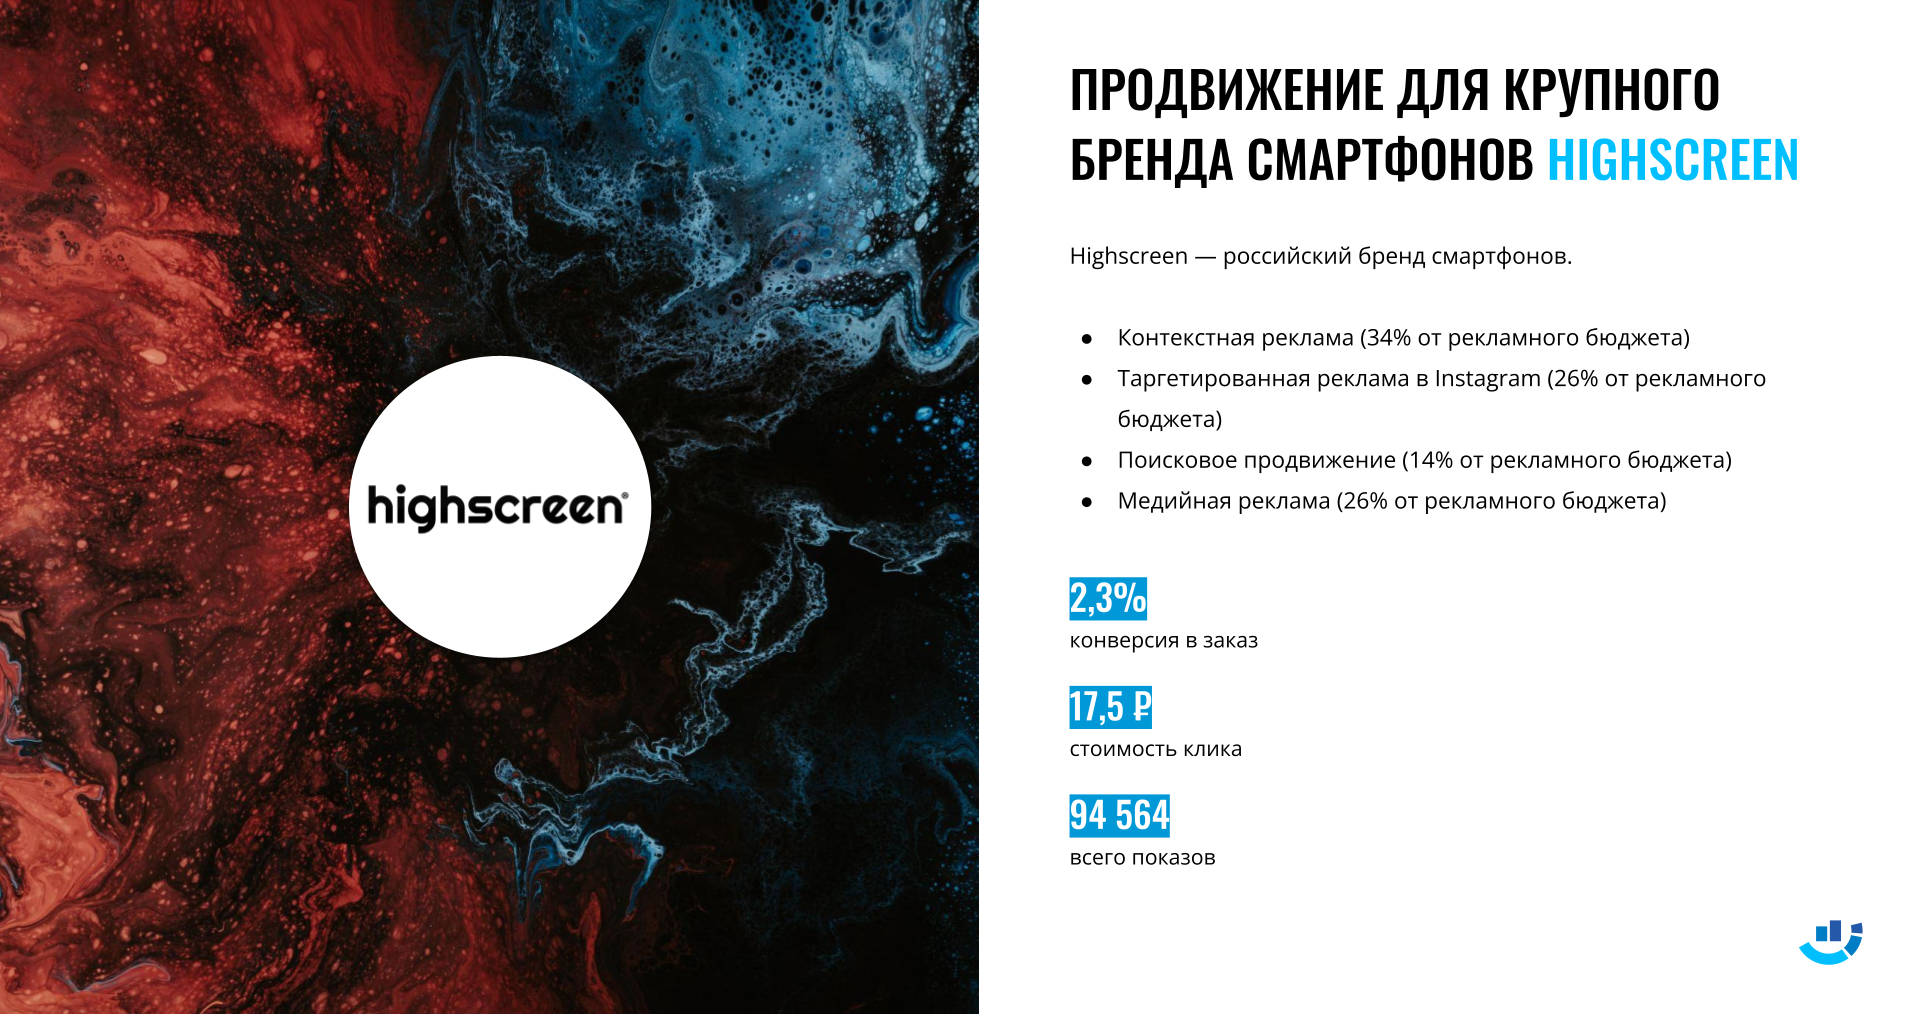 [Кейс] Смартфоны и гаджеты. Комплексное продвижение российского бренда электроники Highscreen